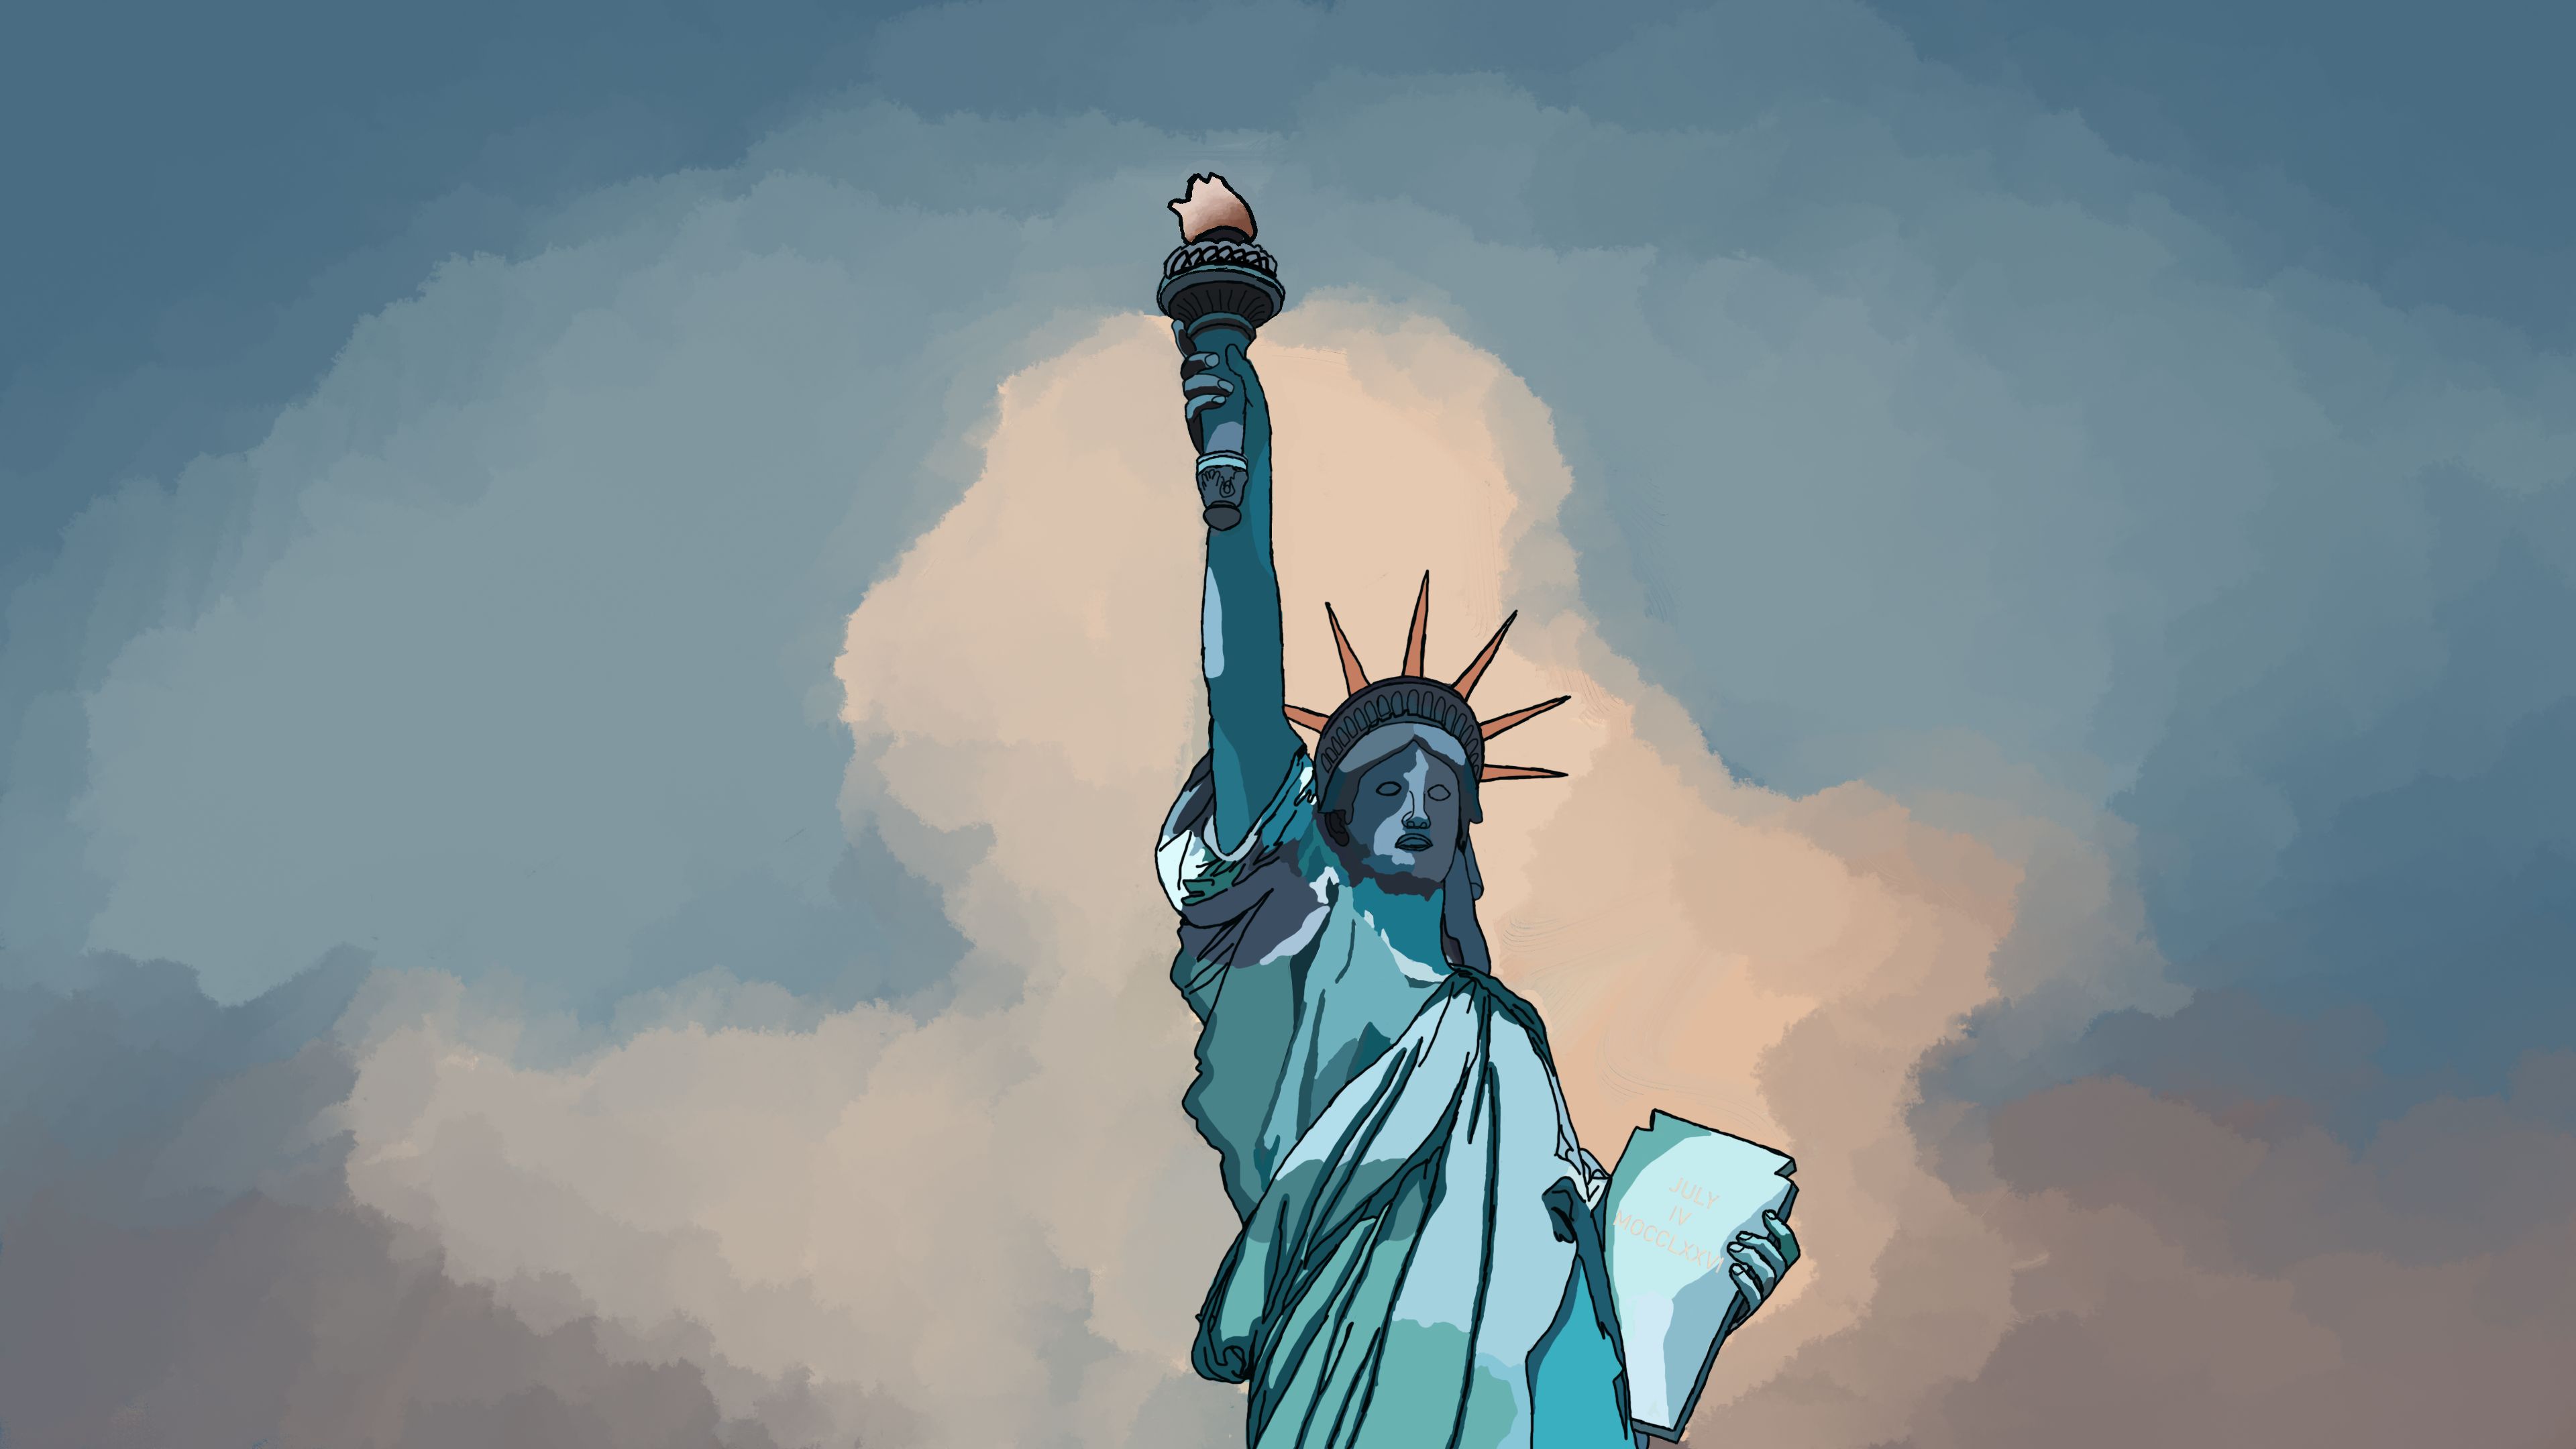 Скачать обои бесплатно Облака, Статуя Свободы, Картина, Сделано Человеком картинка на рабочий стол ПК